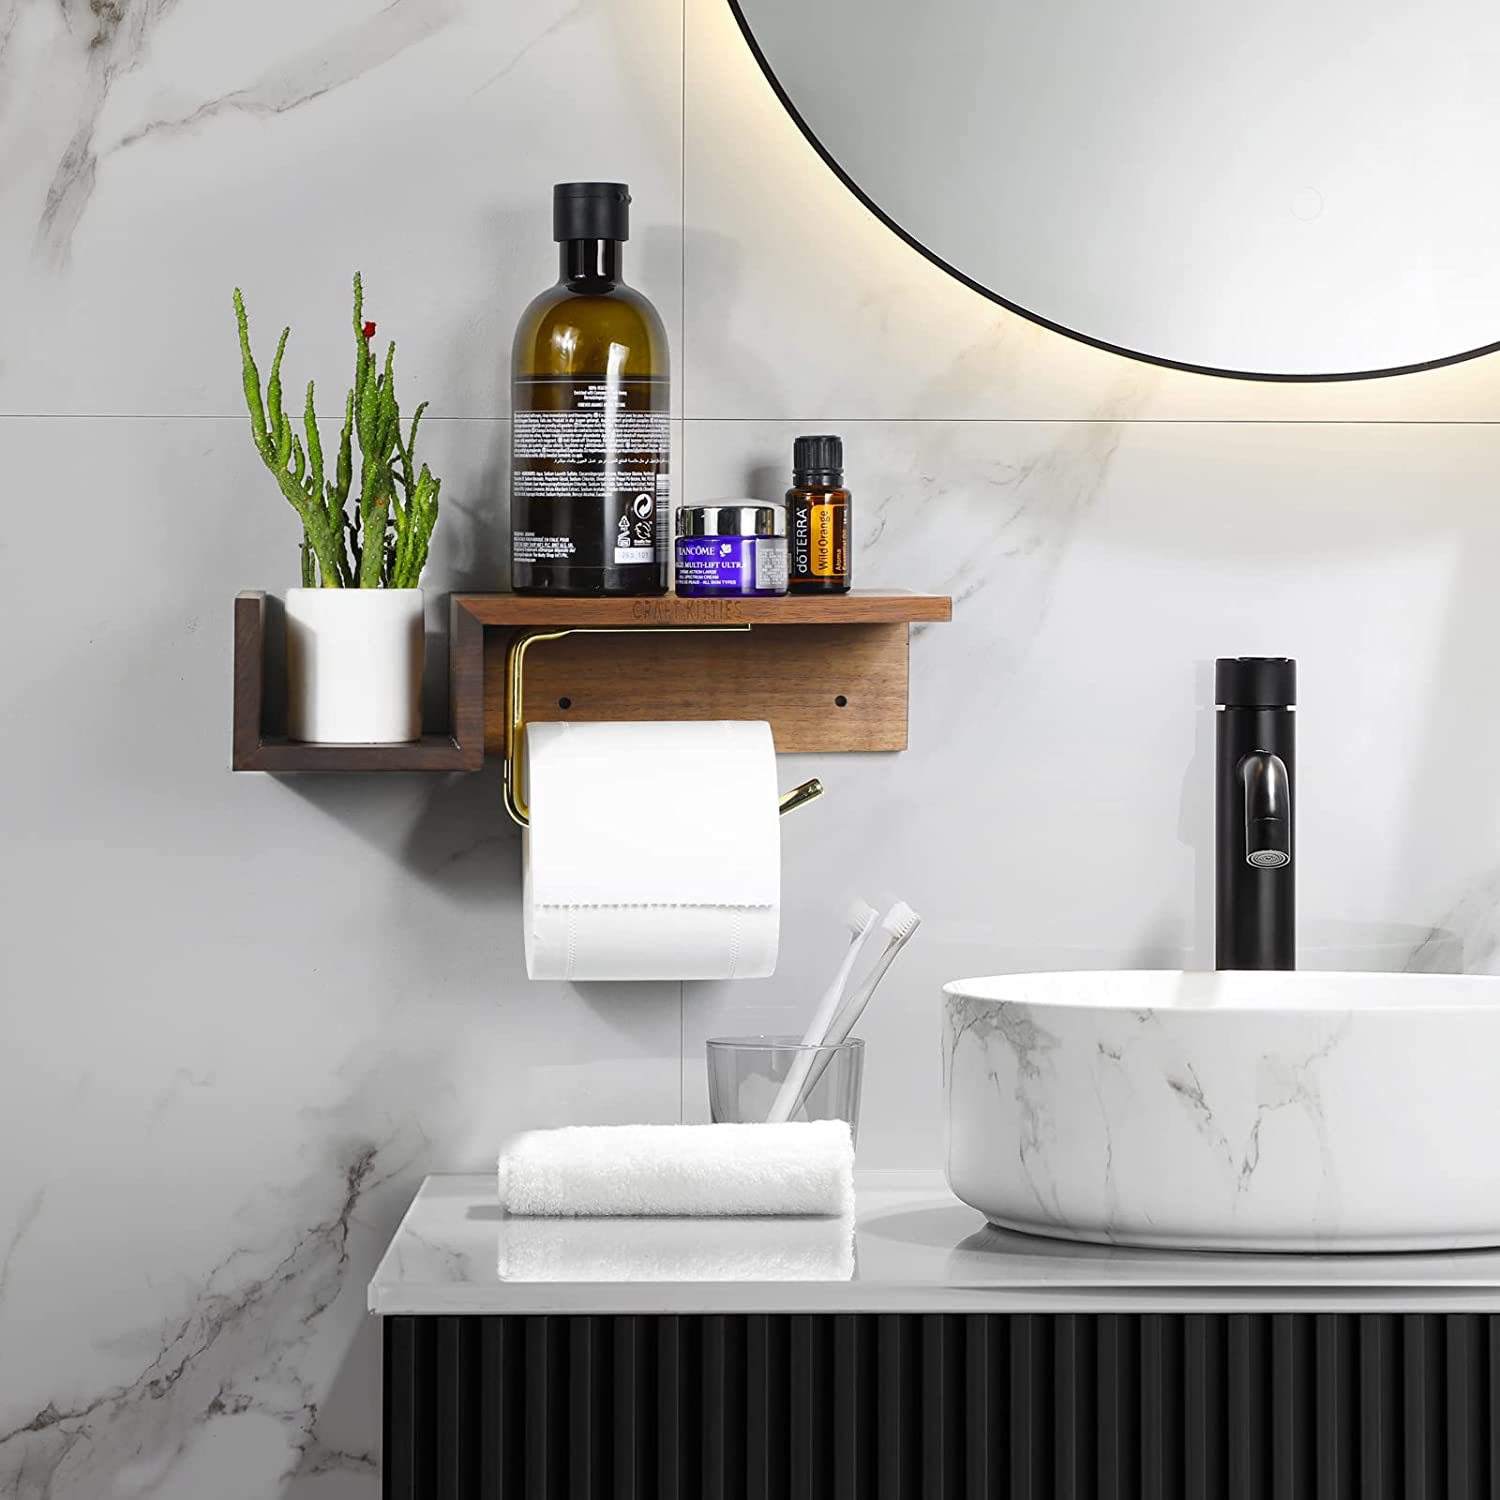 木质黑胡桃厕所置物架带手机架浴室卫生纸架壁挂式卫生纸卷架